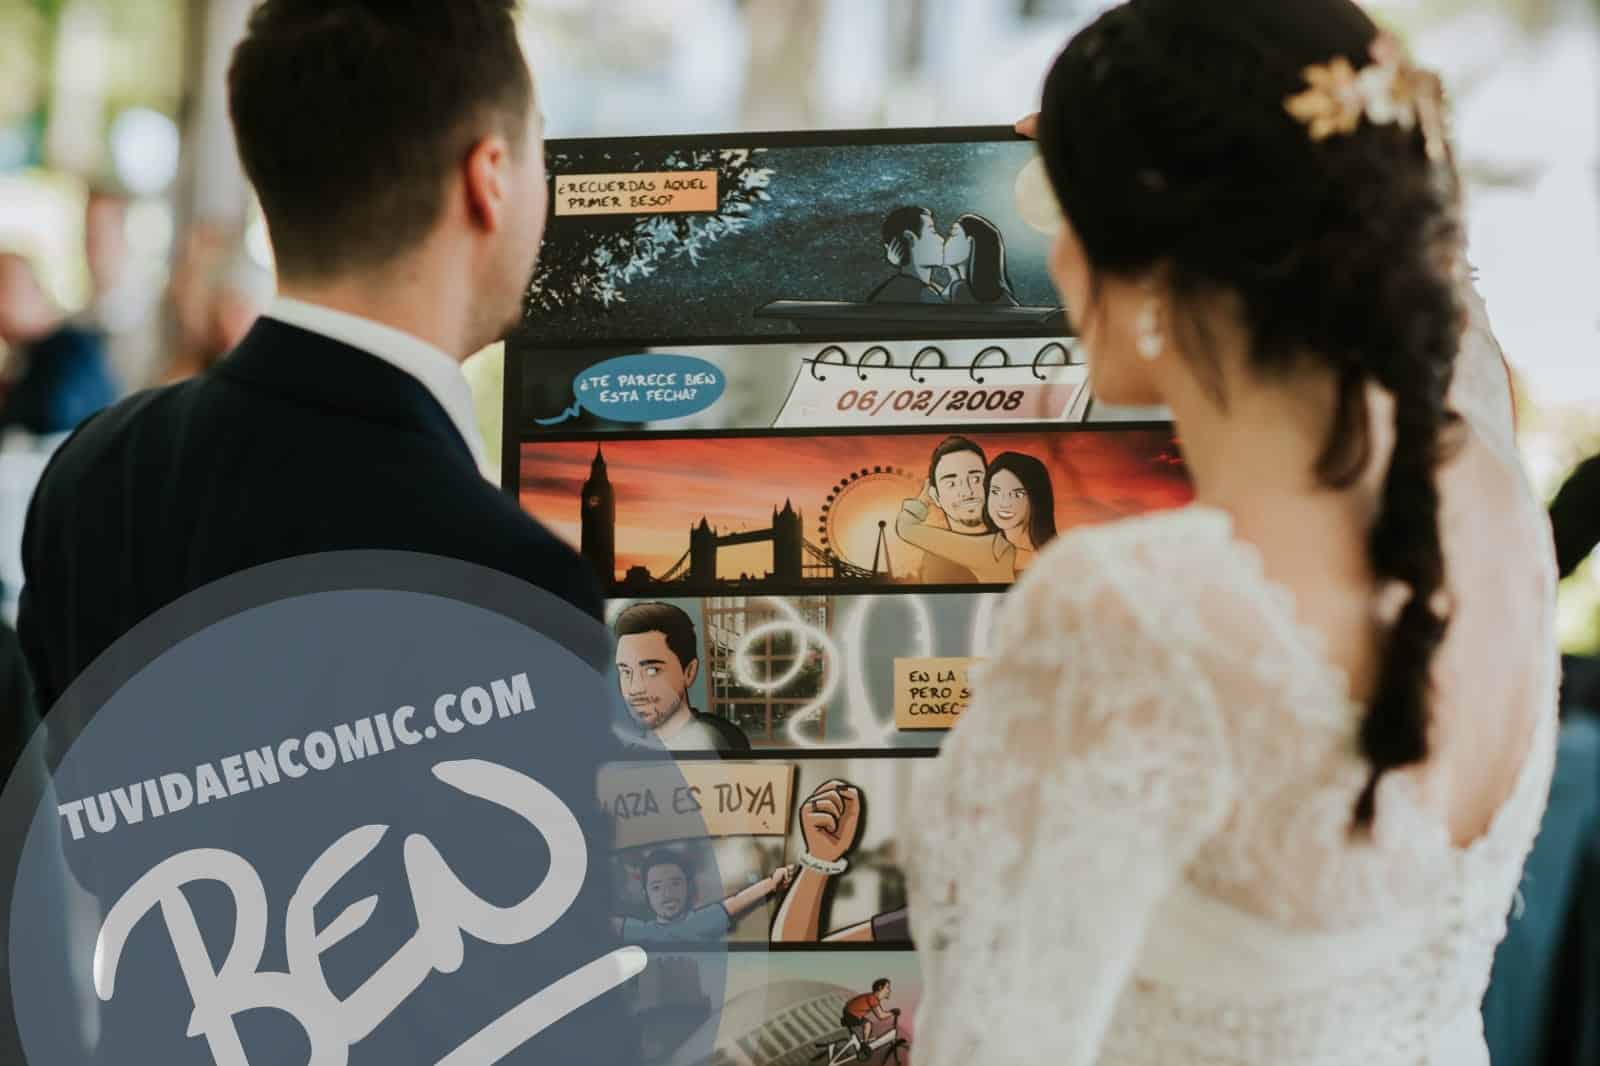 Cómic personalizado - "Regalo de boda con Nuestra historia de Amor en viñetas" - www.tuvidaencomic.com - Regalos personalizados - Bodas personalizadas - Bodas originales - Tu Vida en Cómic - TESTIMONIO 2